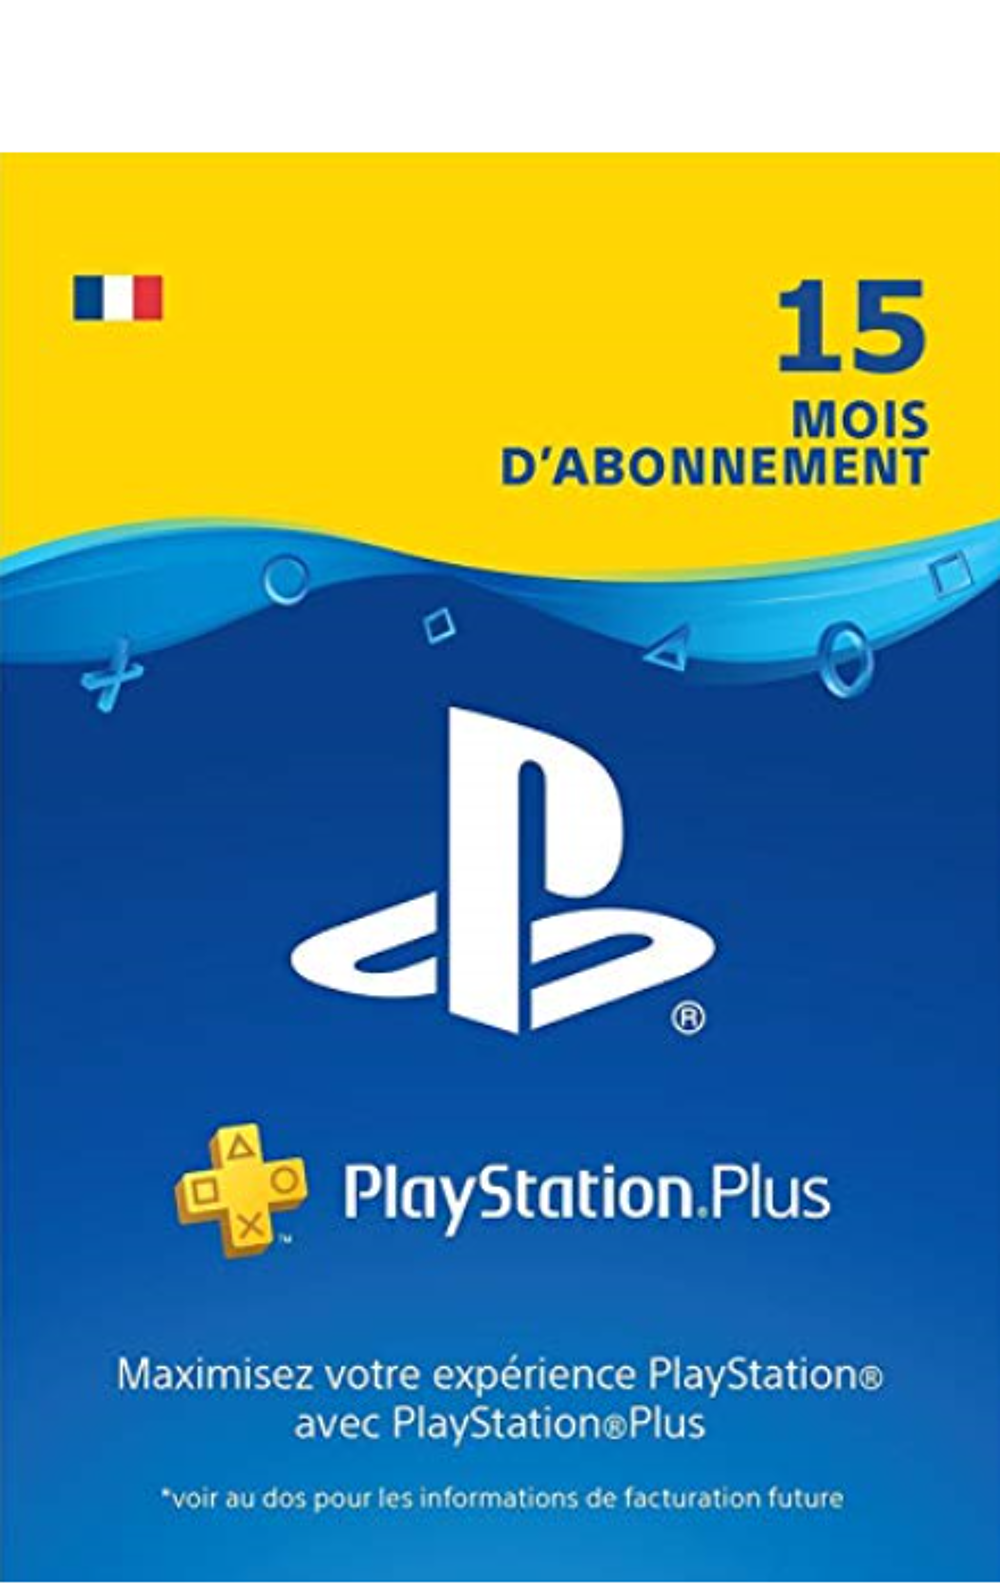 PS4 PSN PlayStation Plus: abonnement de 15 mois Consoles et jeux vidos